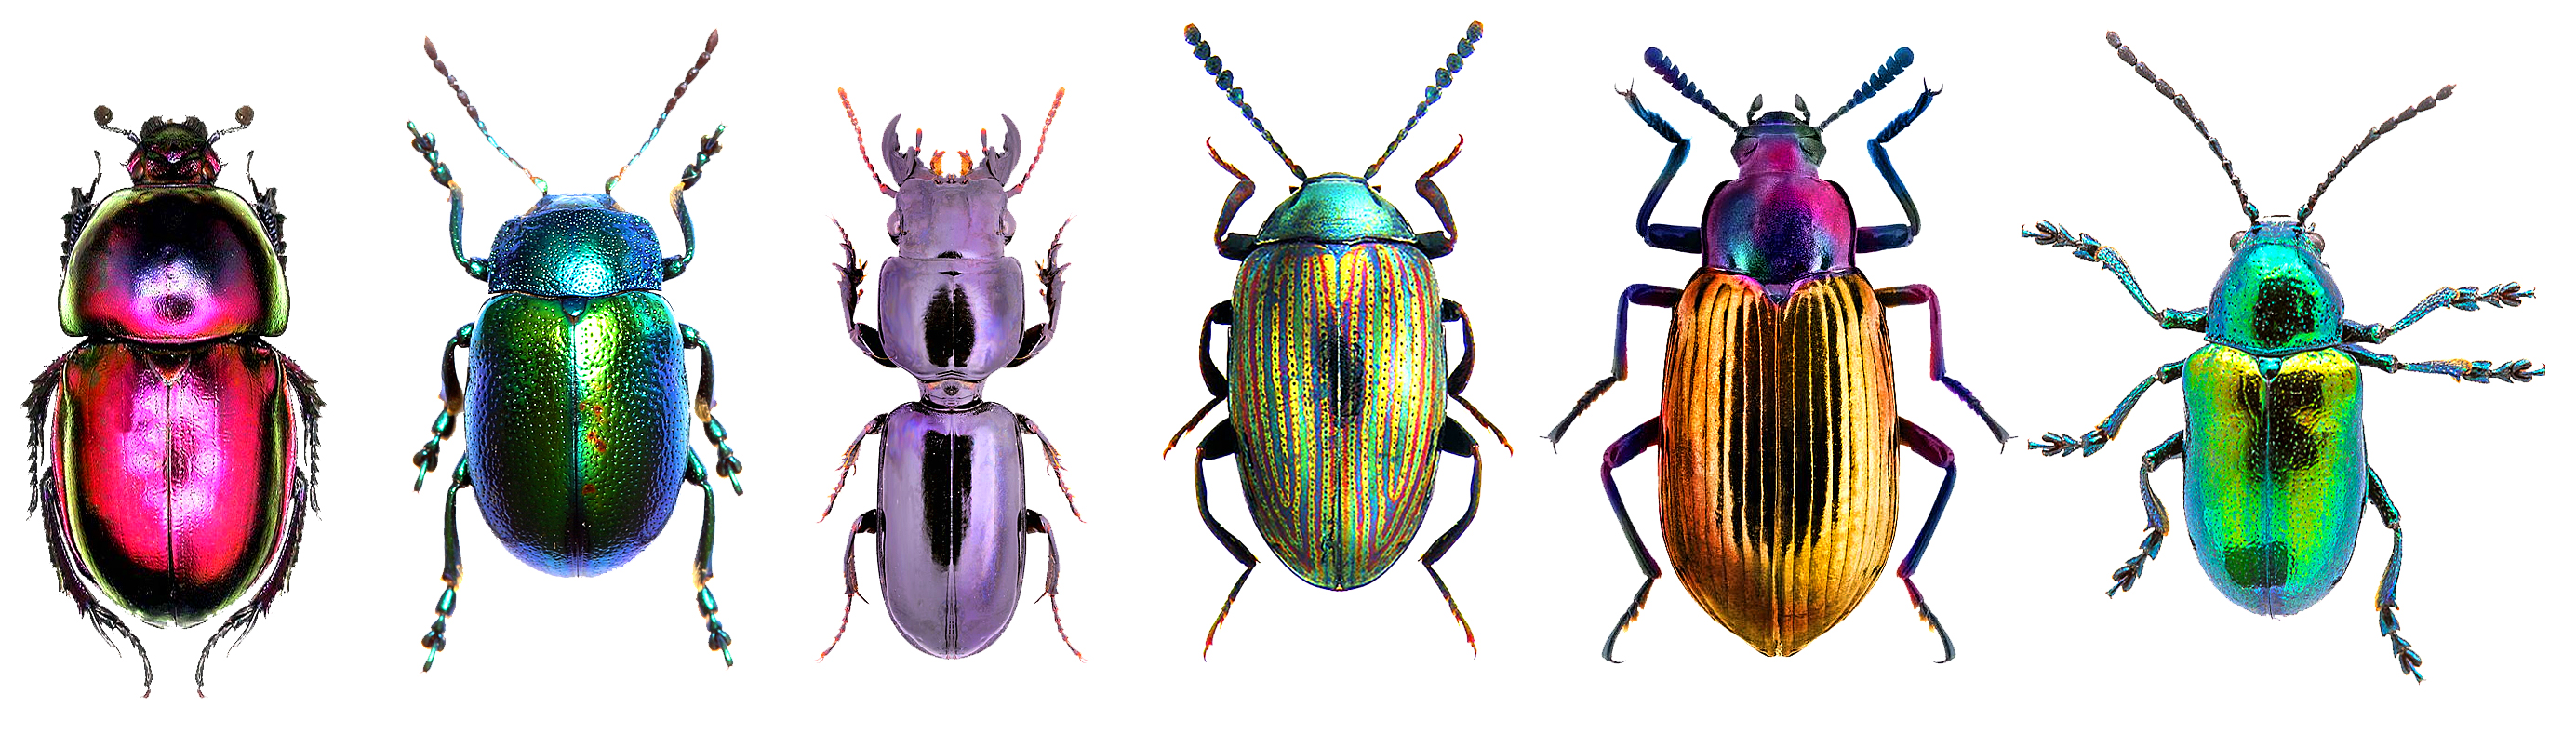 Weird Science: An Inordinate Fondness for Beetles